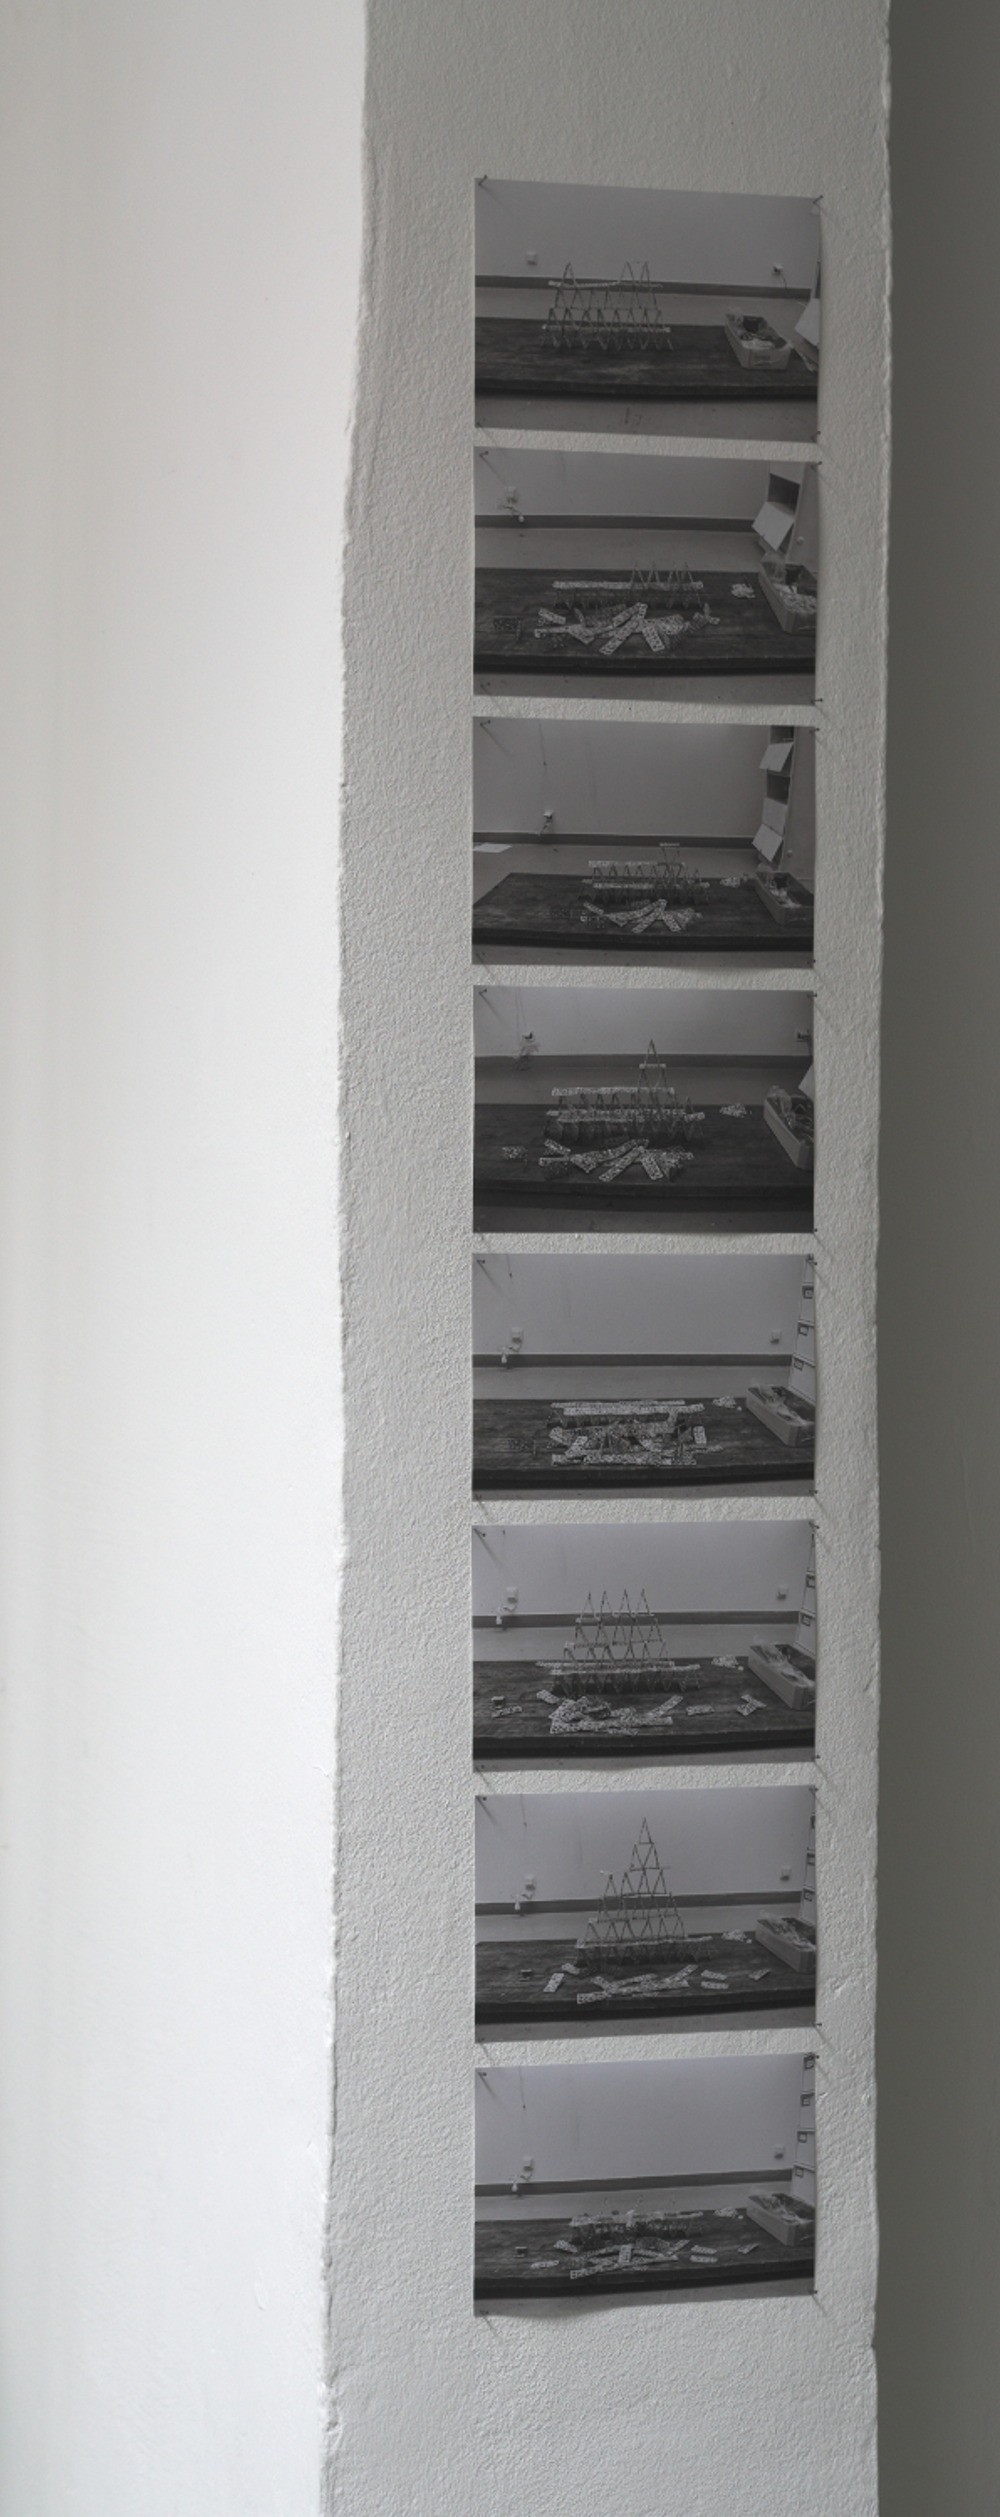 Guillaume Barth – Château LP 400 / Pigmentdruck auf Papier, je 12,3 x 18,6 cm, 2009